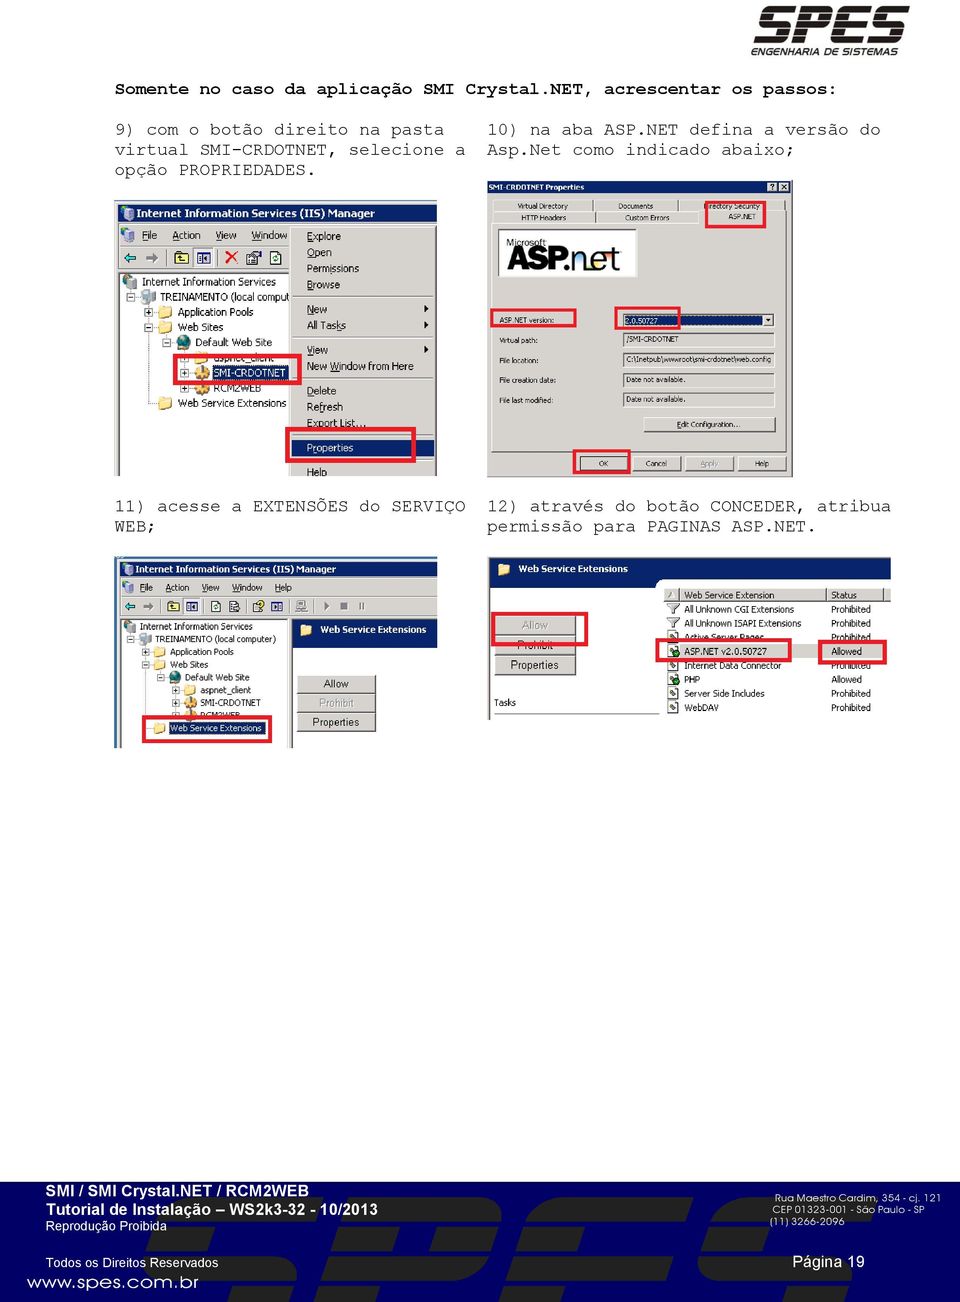 a opção PROPRIEDADES. 10) na aba ASP.NET defina a versão do Asp.